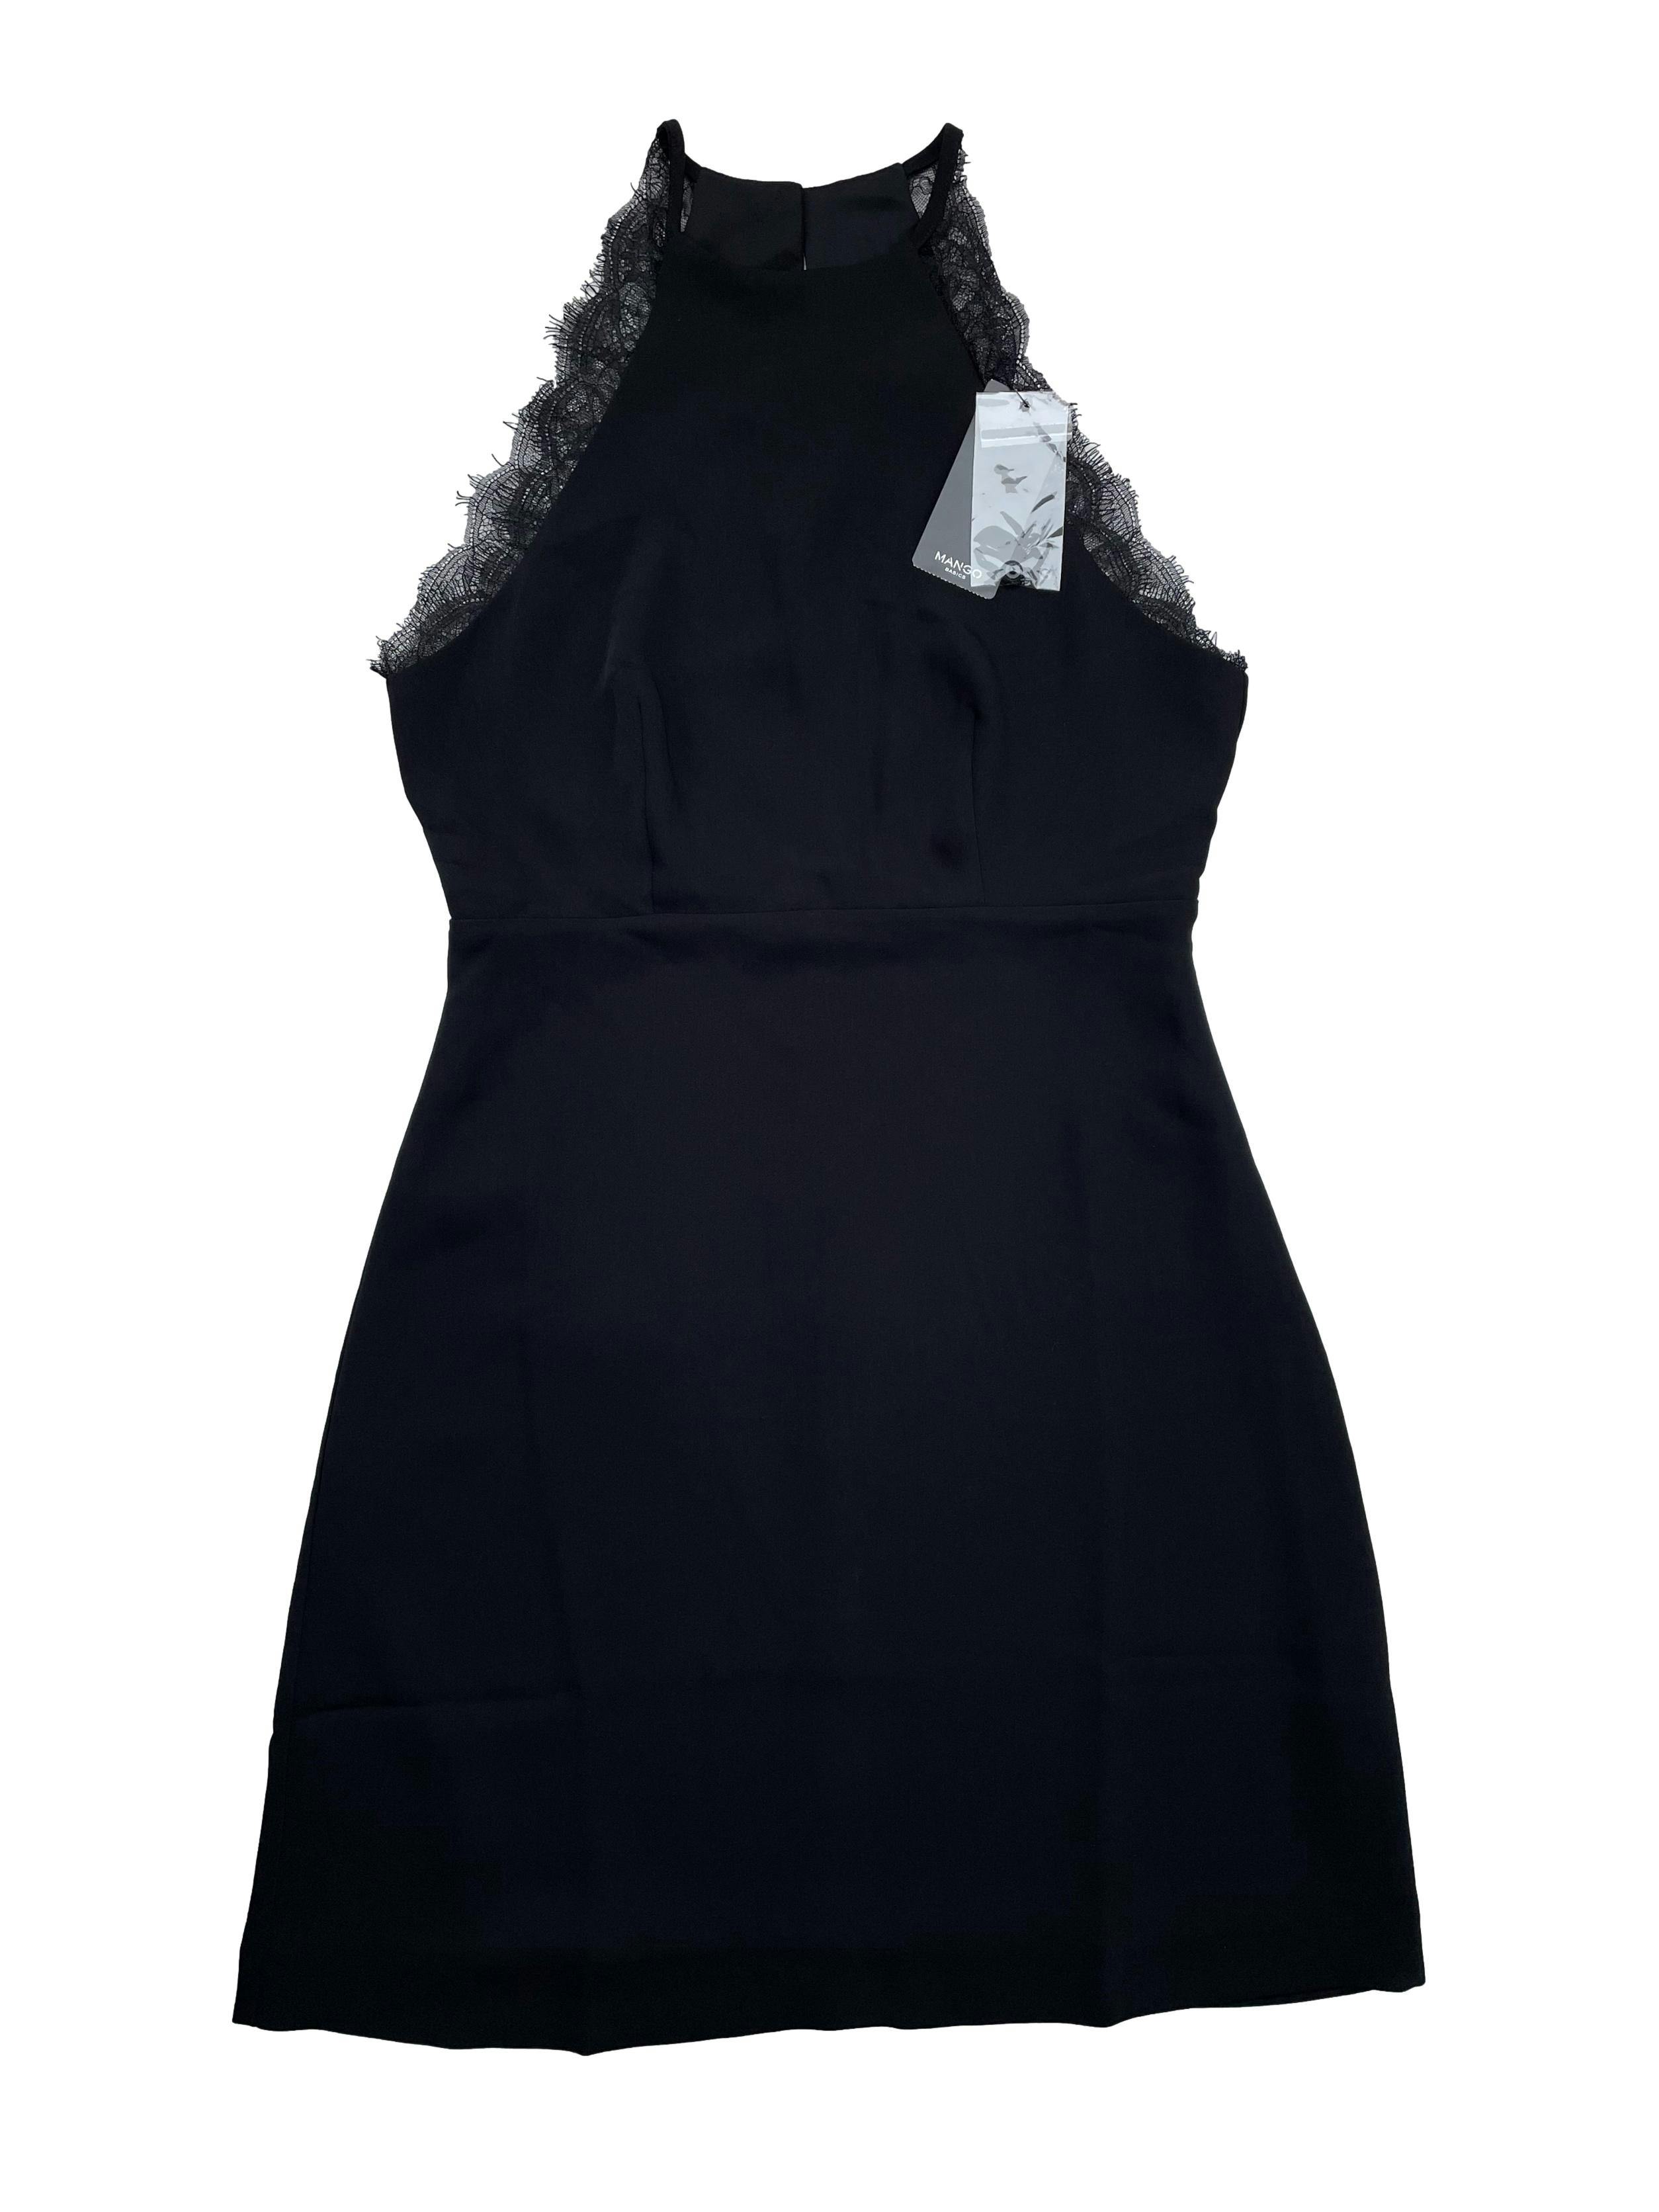 Vestido negro Mango de gasa con forro, cuello halter con encaje, corte en cintura, botones y cierre en espalda. Nuevo con etiqueta, precio original S/250. Busto 90cm, Largo 95cm.